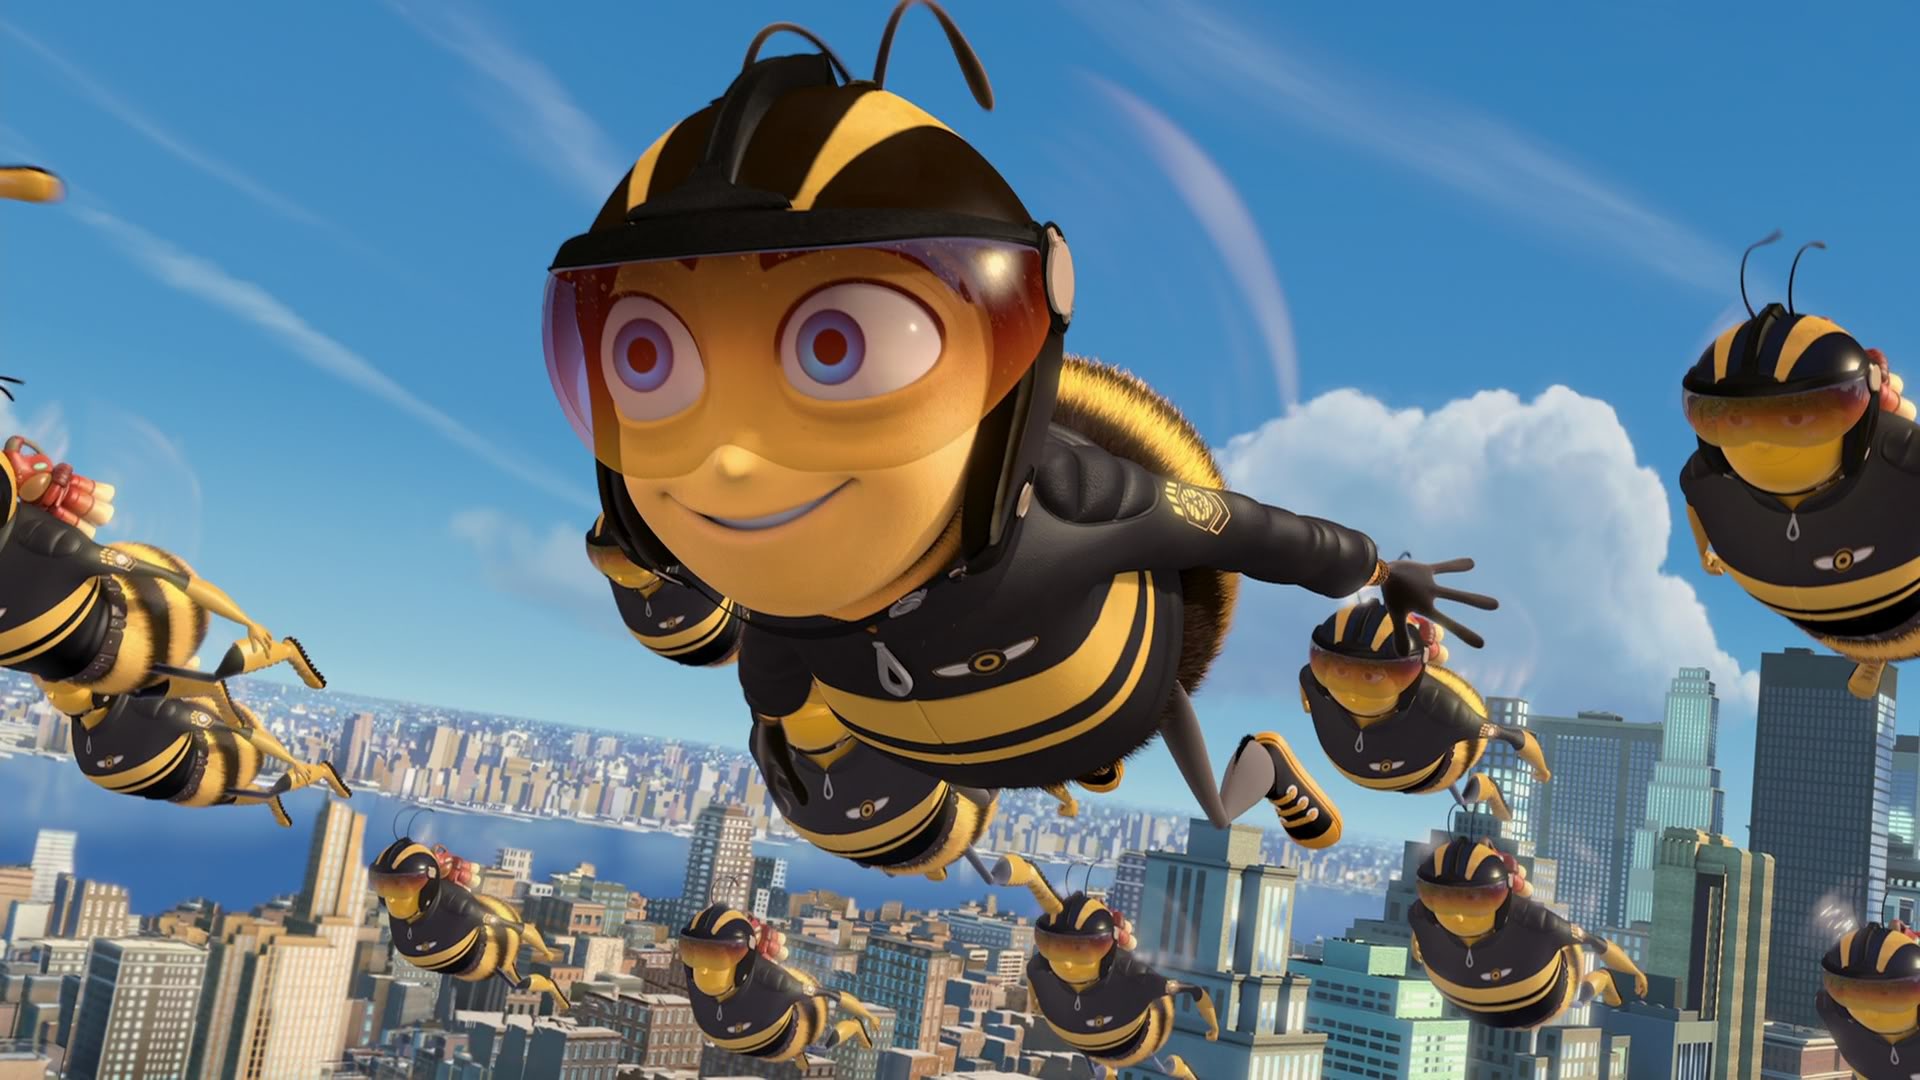 Download Bee Movie, Barry Benson, Bee, Flight, Sky , HD Wallpaper & Backgrounds